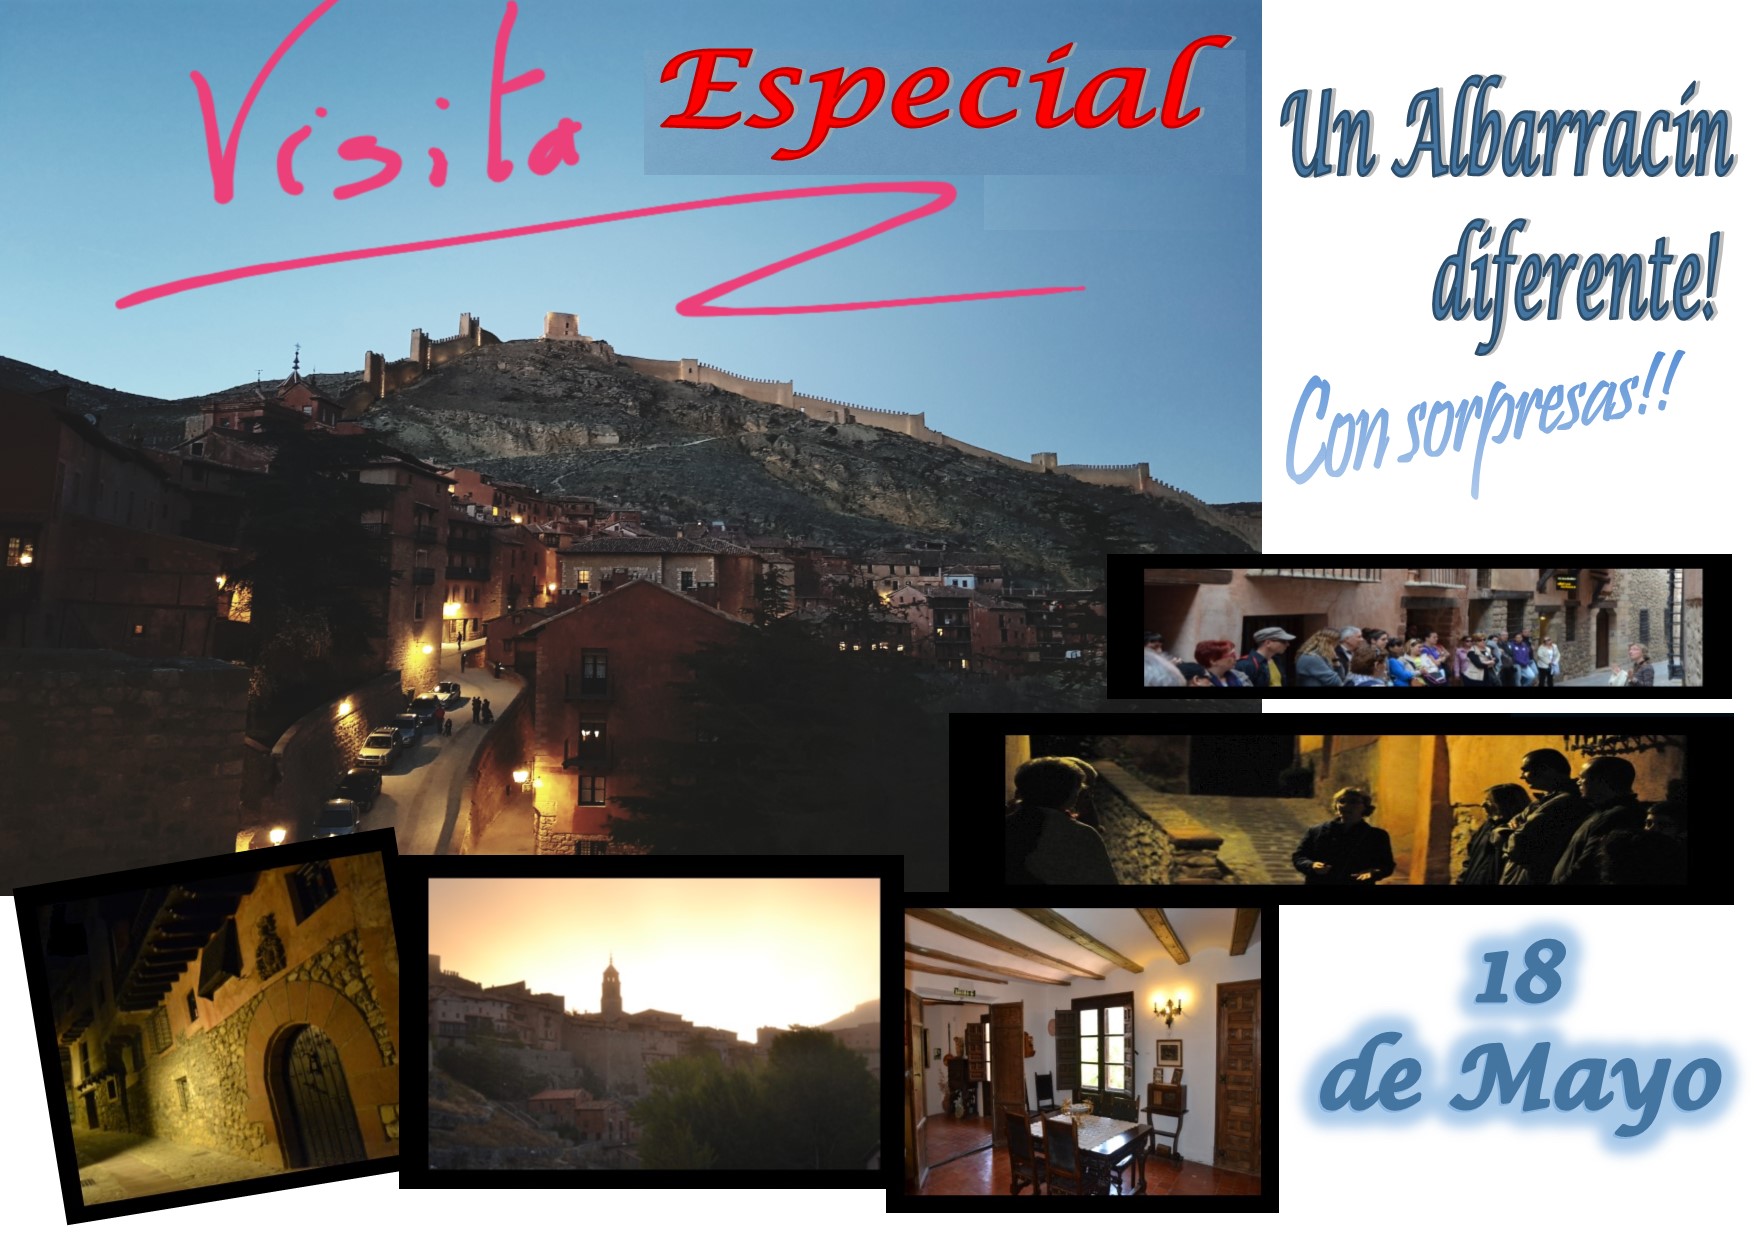 Este Sábado 18 de Mayo por la tarde… Albarracín Especial + Casa Museo… con sorpresas!!!